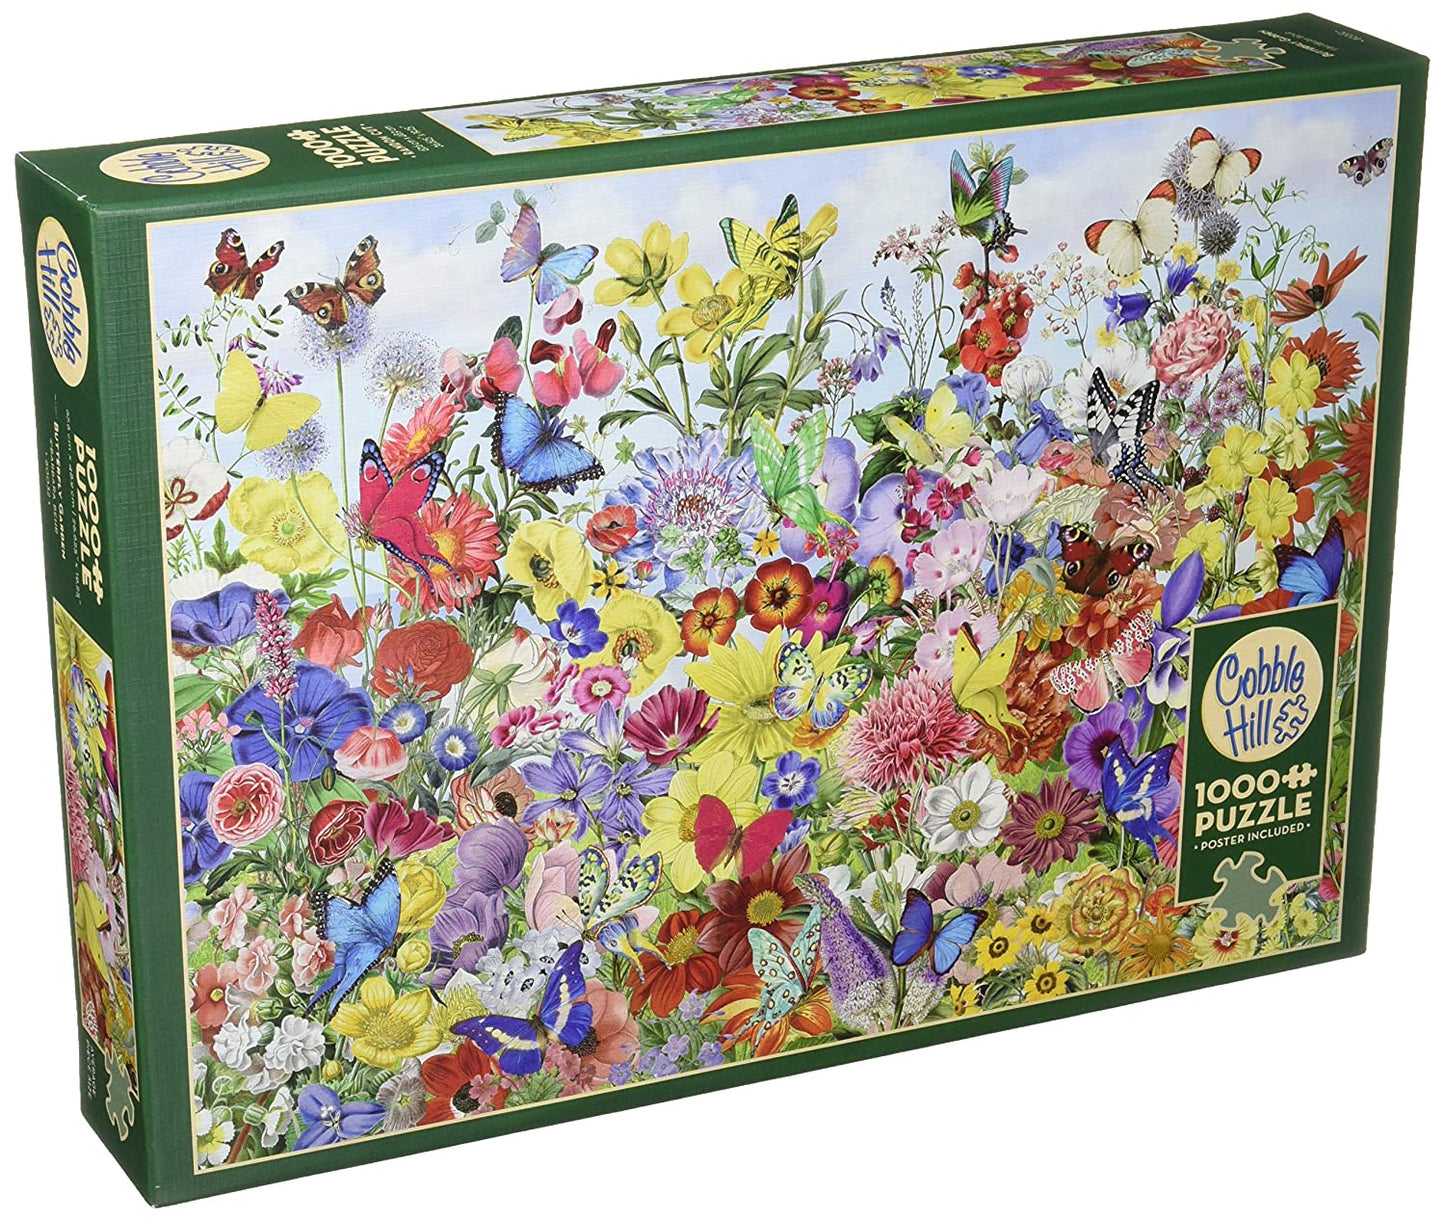 Cobble Hill 1000 Piece Jigsaw Puzzle Butterfly Garden